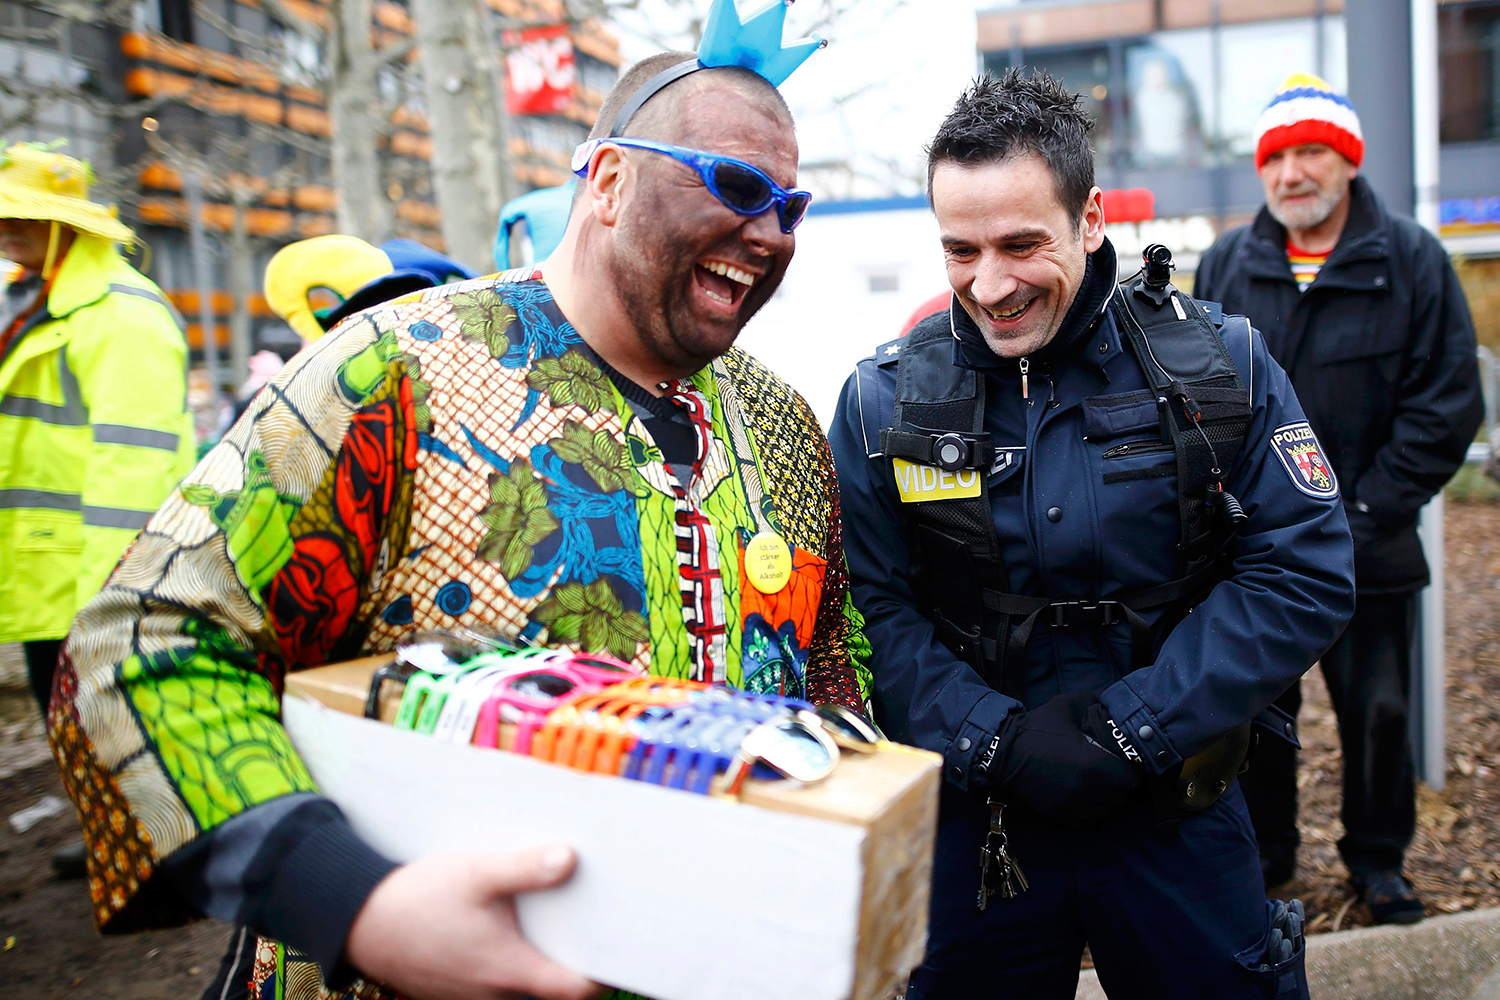 Colonia celebra su carnaval entre grandes medidas de seguridad